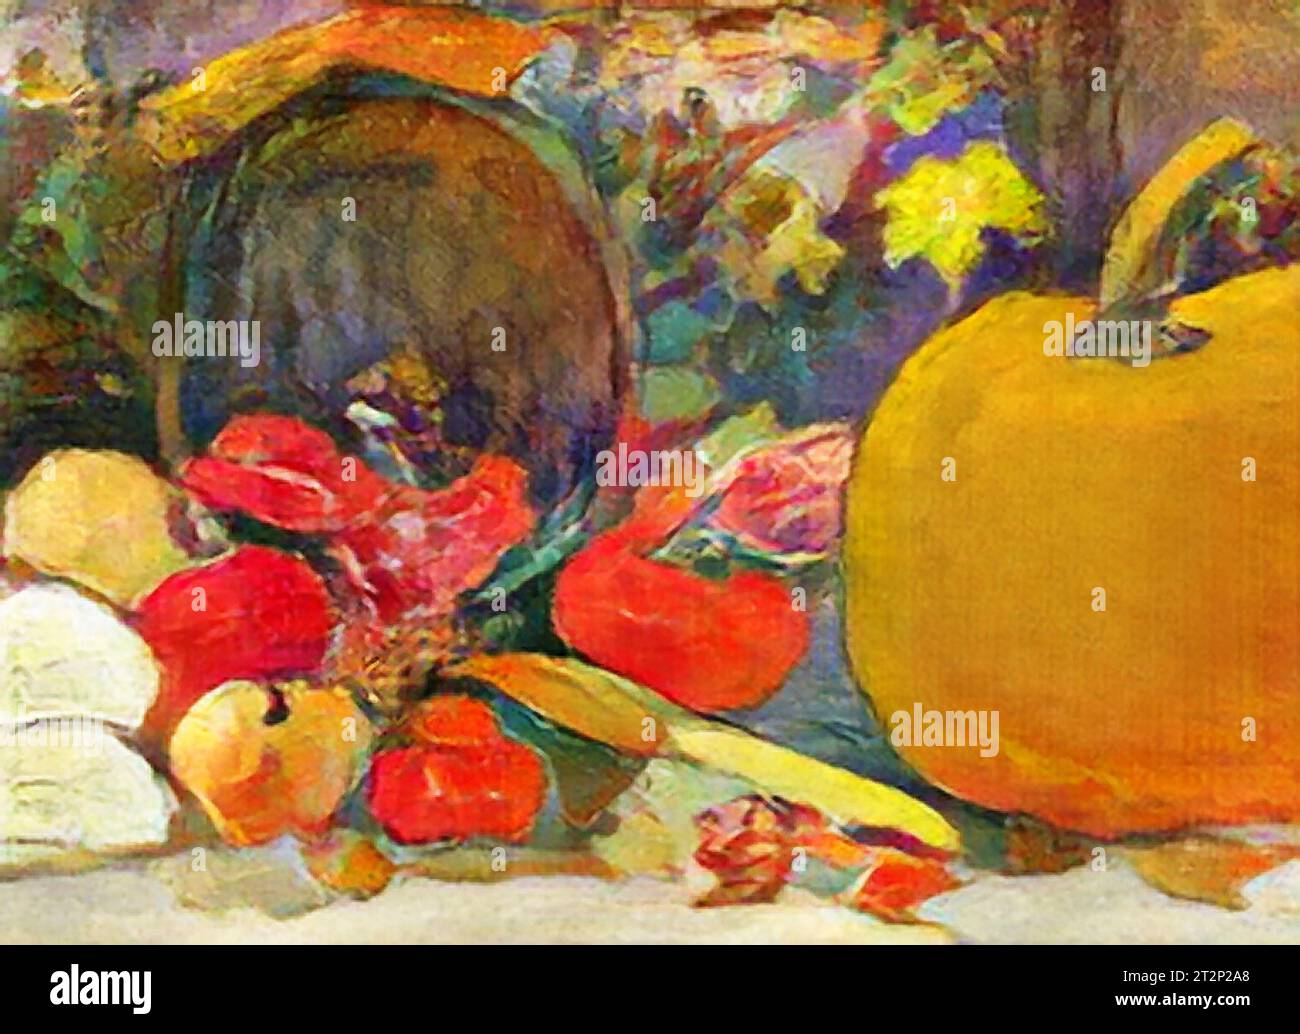 Ein wunderschönes, farbenfrohes digitales Gemälde einer Herbsternte, komplett mit einem Kürbis. Stockfoto